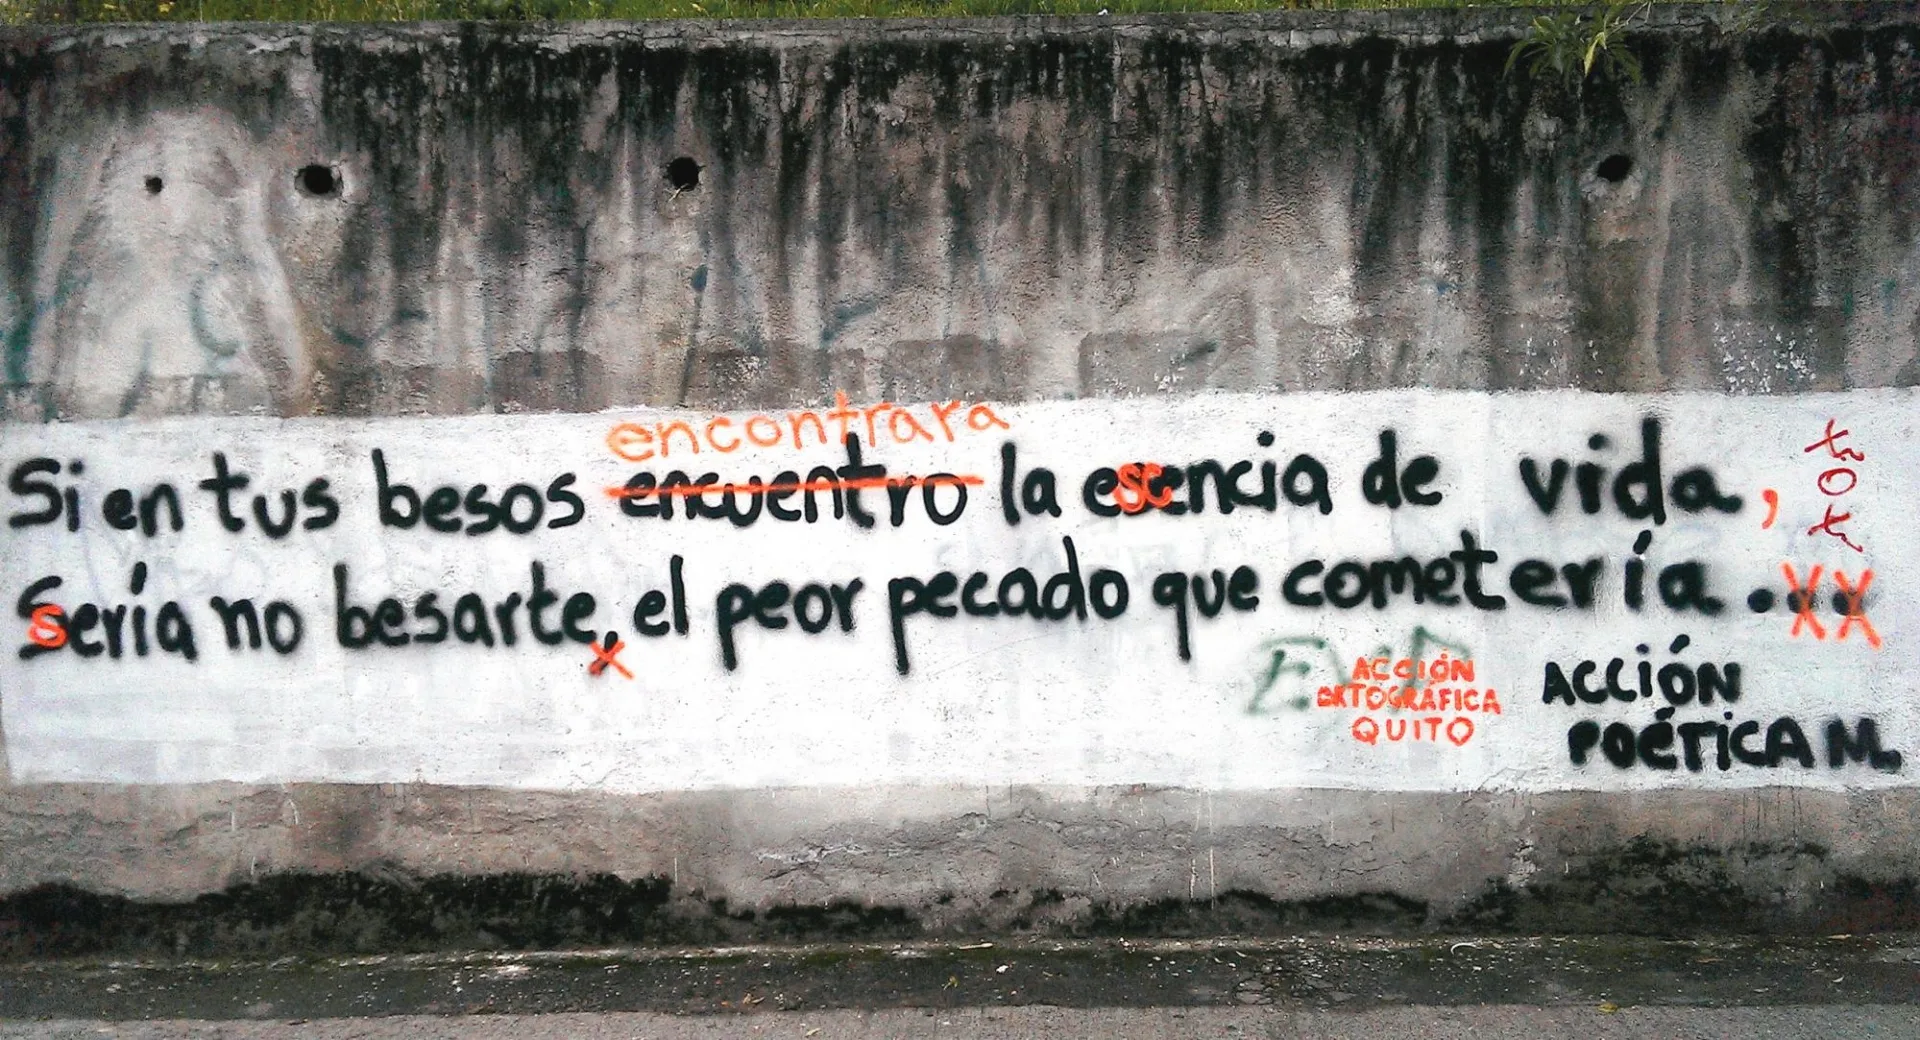 Corrected graffiti courtesy of Acción Ortográfica Quito.